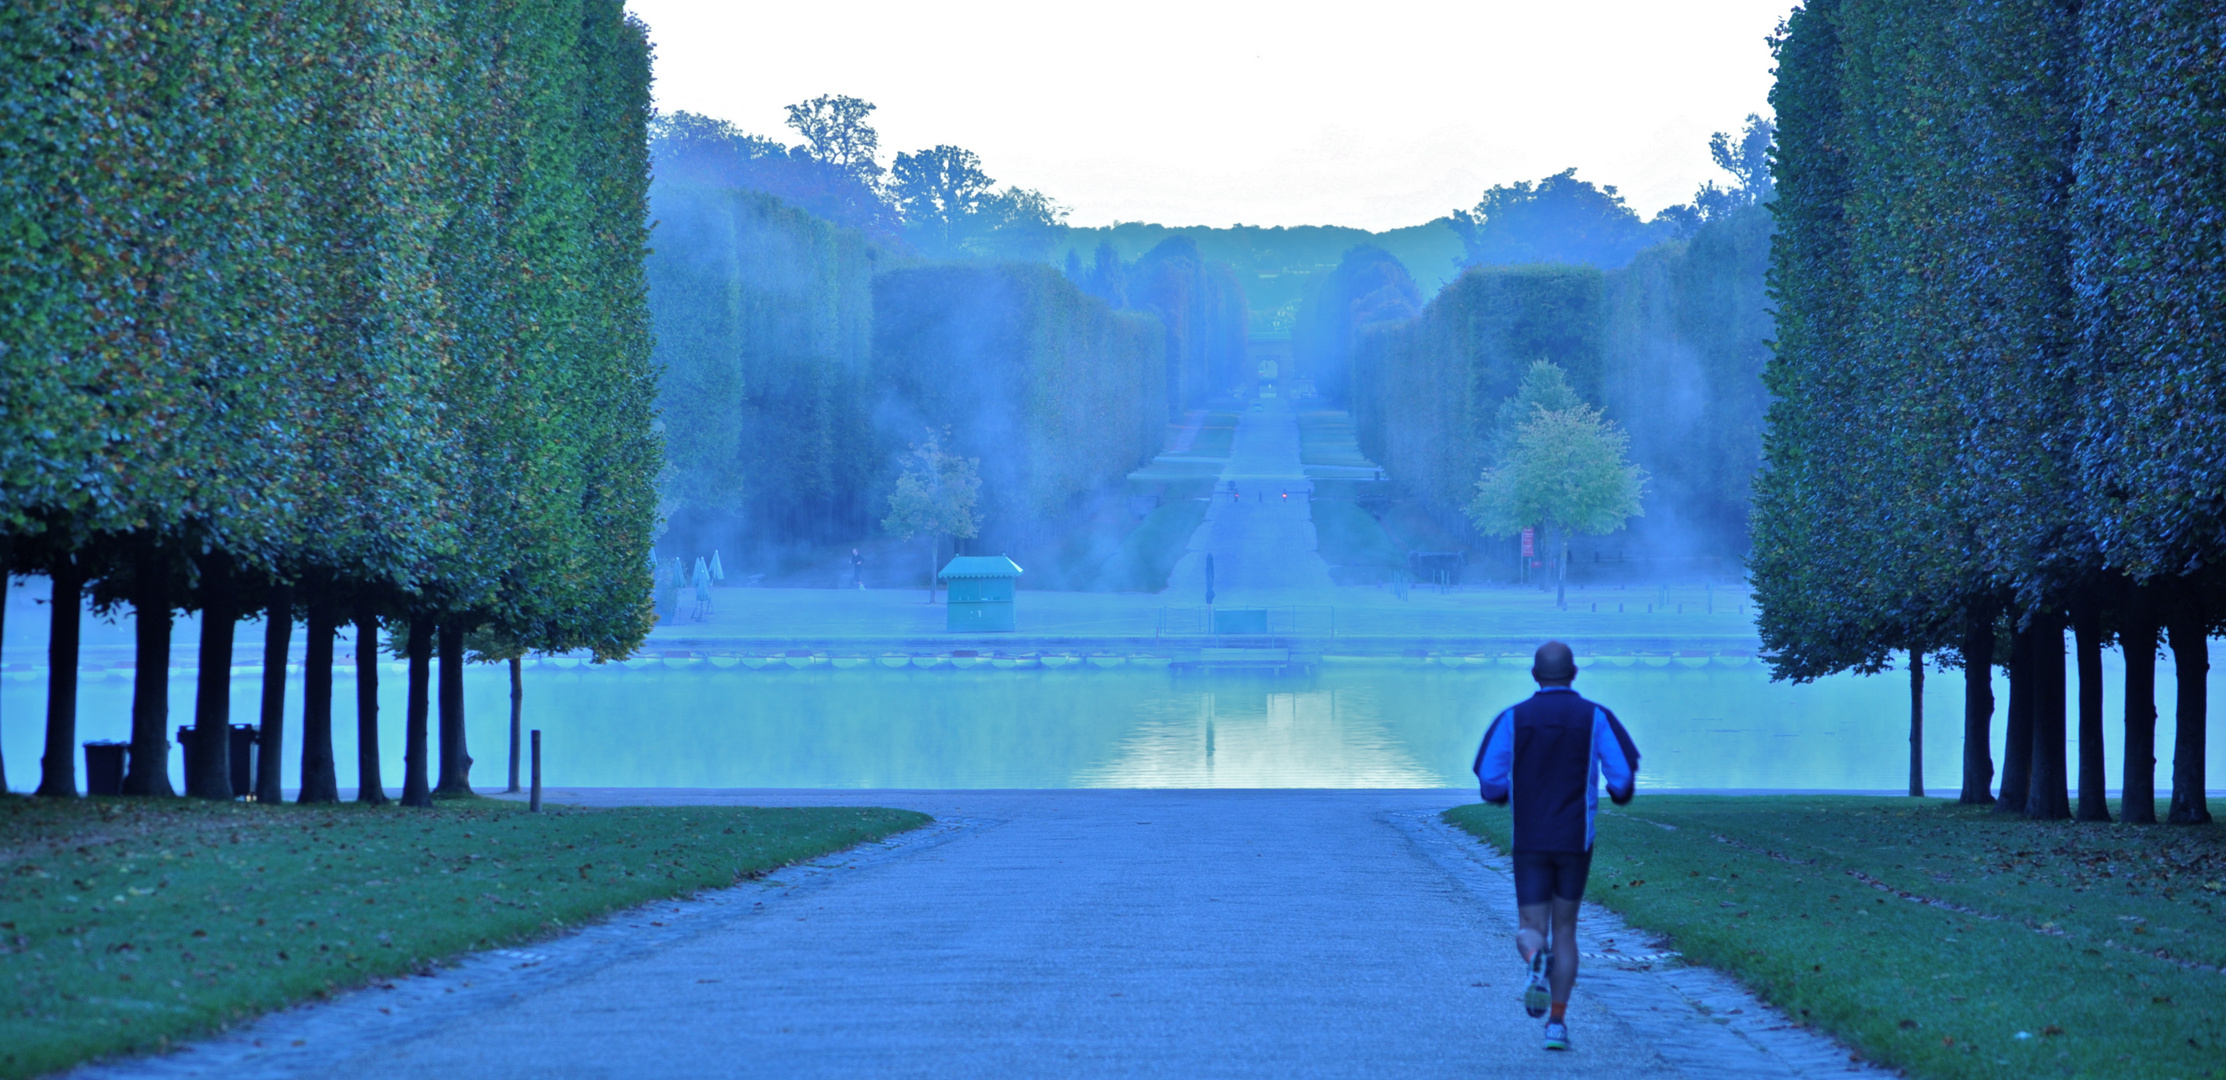 Erster Frühnebel im Schlosspark von Versailles